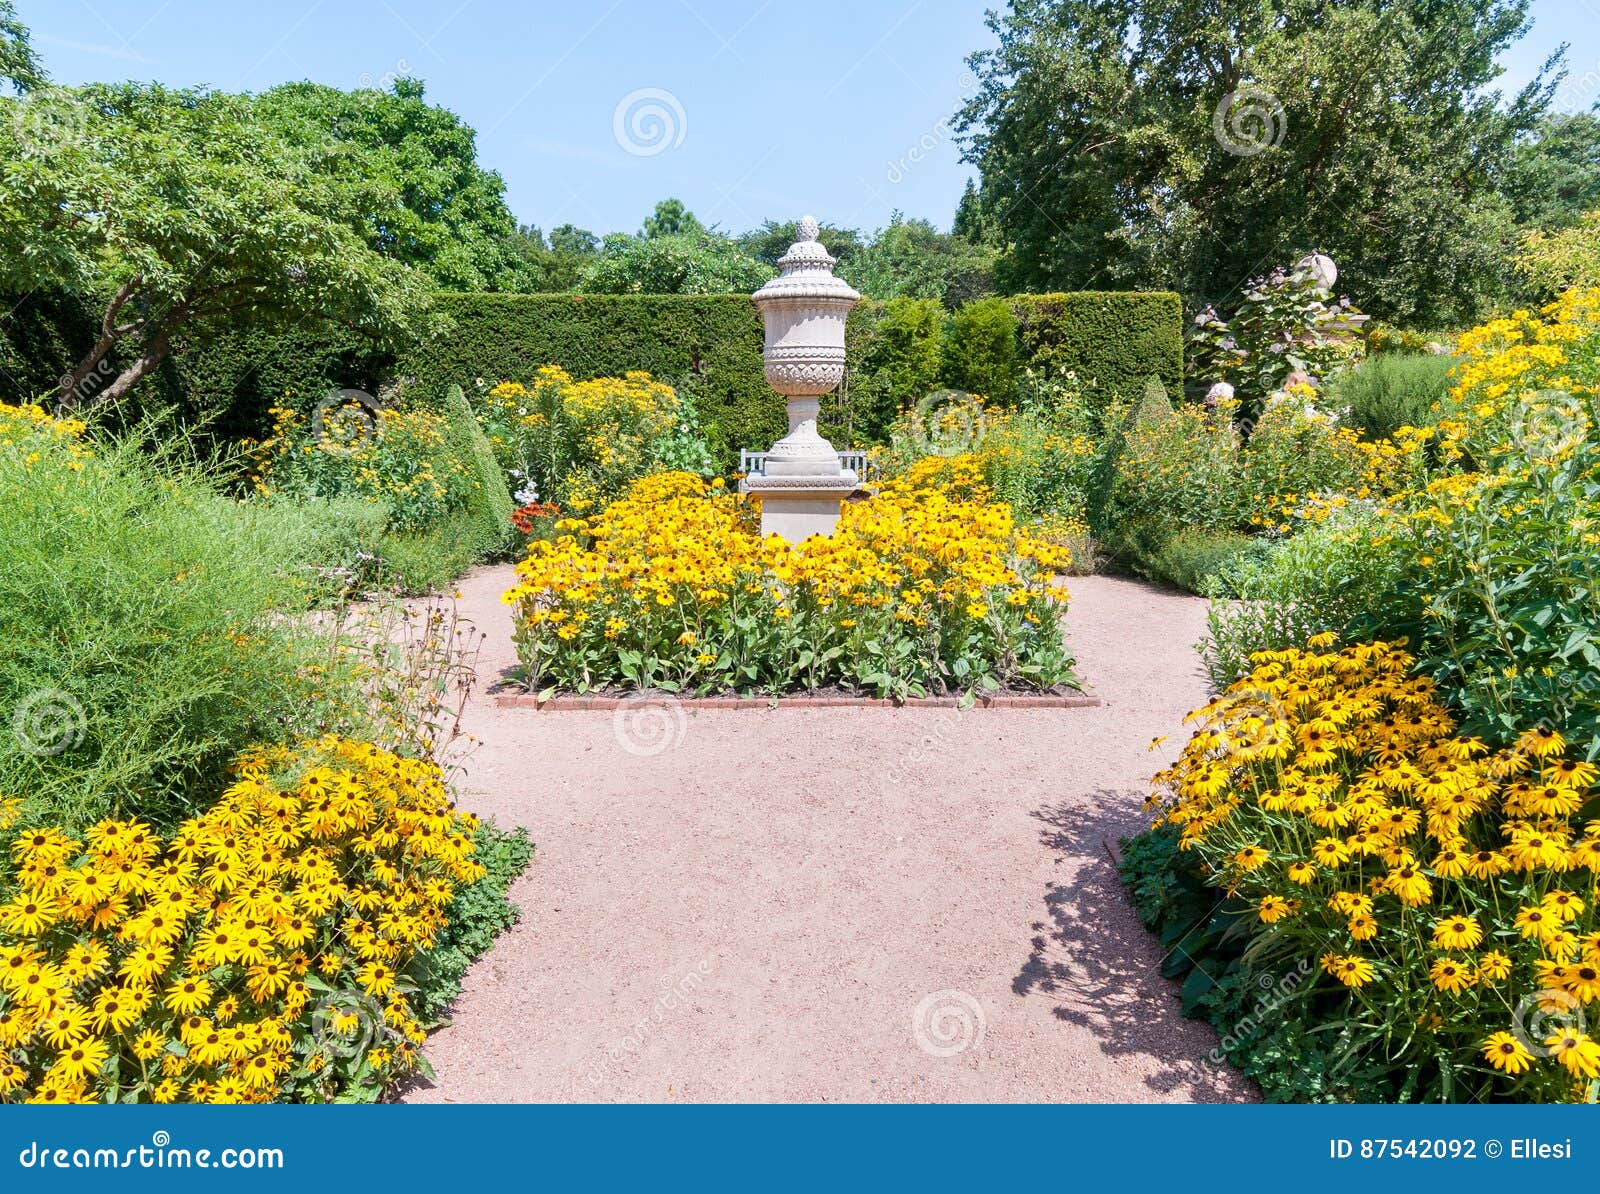 Chicago Botanic Garden Illinois Usa Stock Photo Image Of